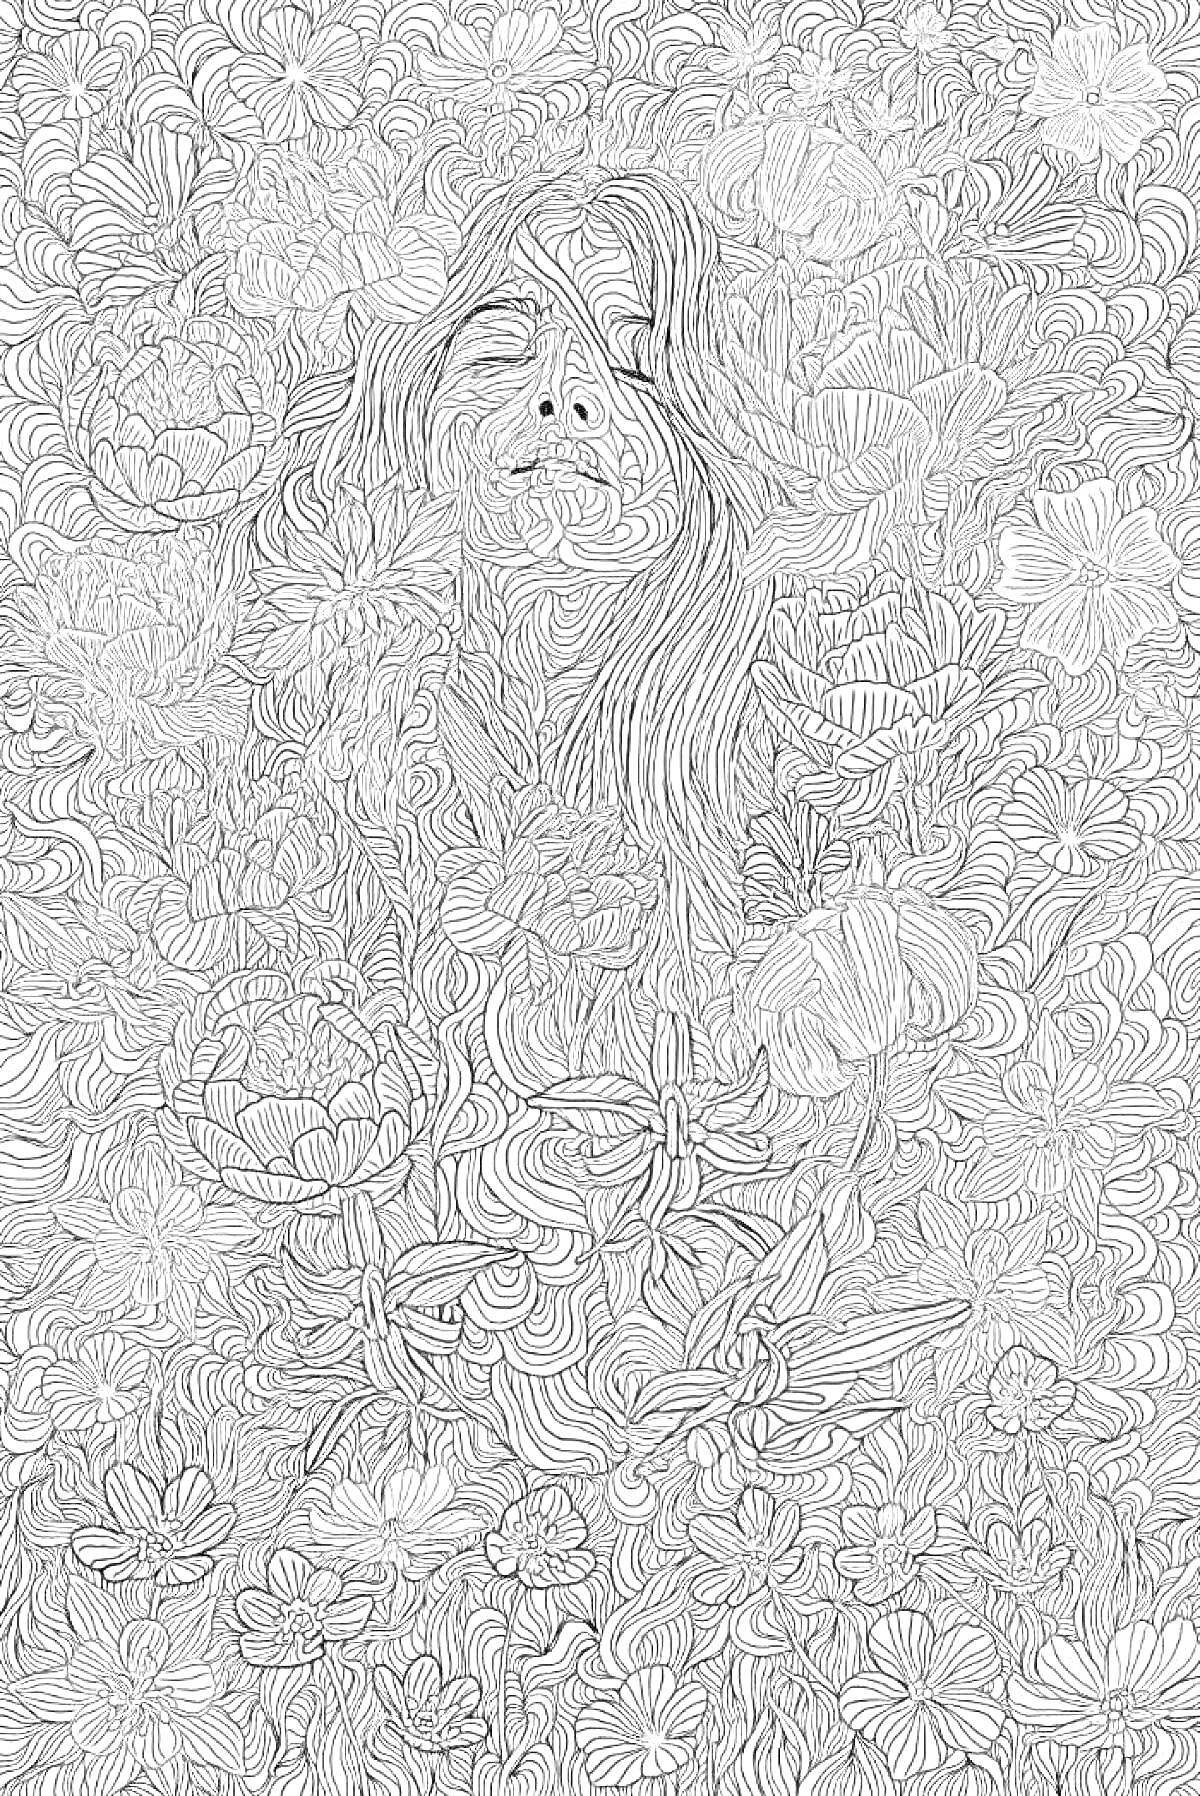 Раскраска Лицо женщины среди множества сложных цветочных узоров и лепестков